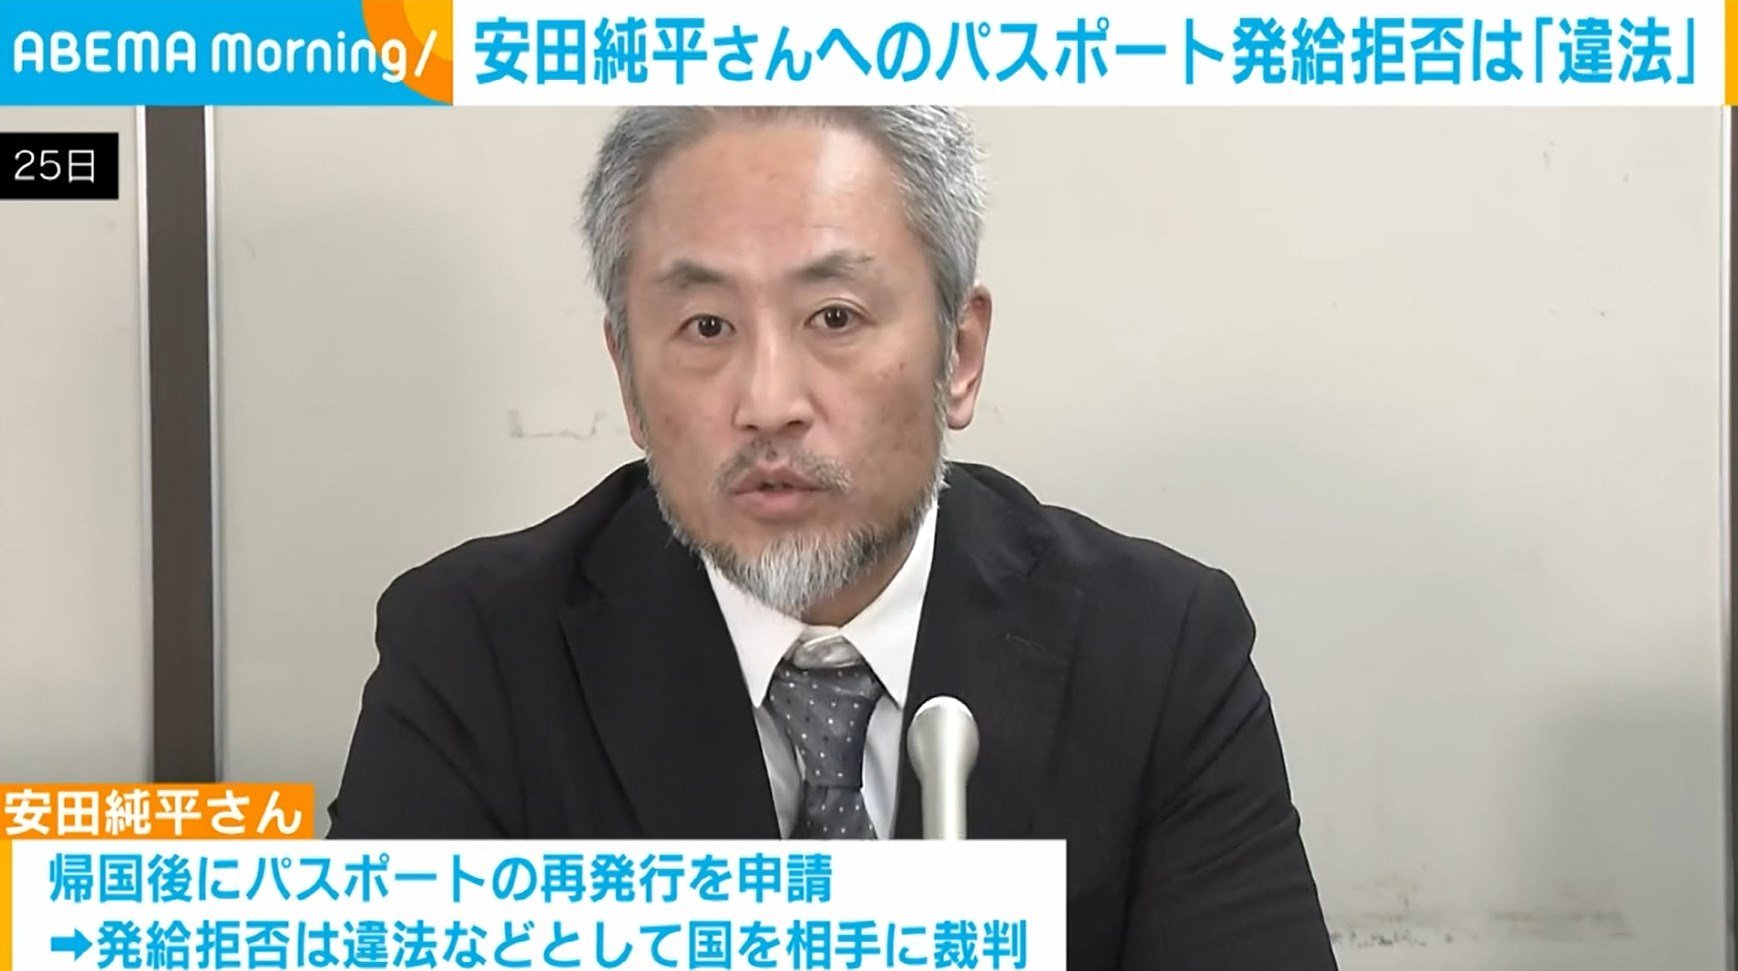 安田純平さんへのパスポート発給拒否は「違法」 取り消すよう国に命じる 東京地裁 | 国内 | ABEMA TIMES | アベマタイムズ